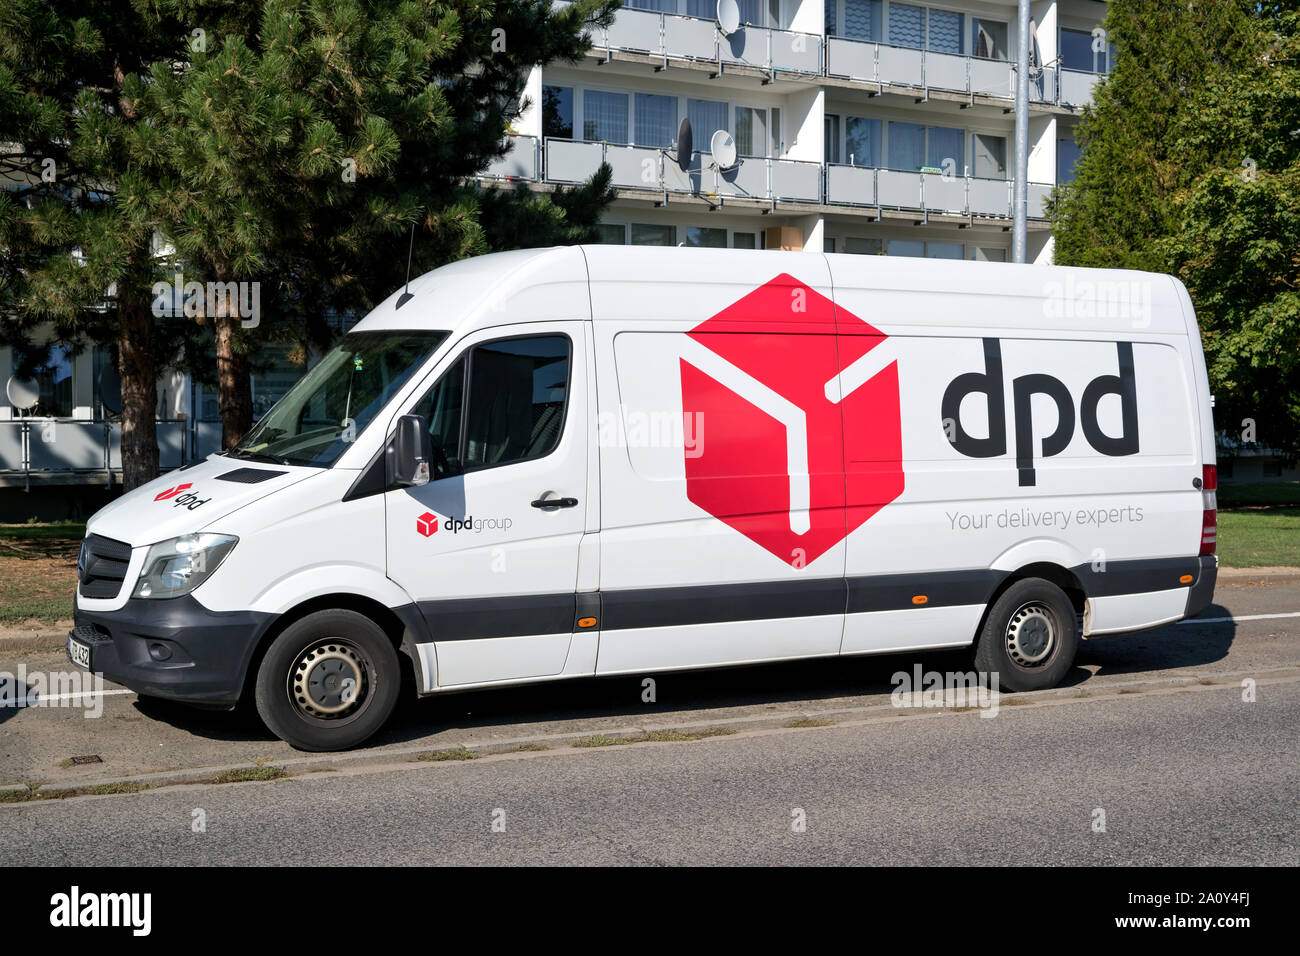 Consegna DPD van. DPDgroup è la international parcel delivery network di Stato francese di proprietà del servizio postale di La Poste. Foto Stock